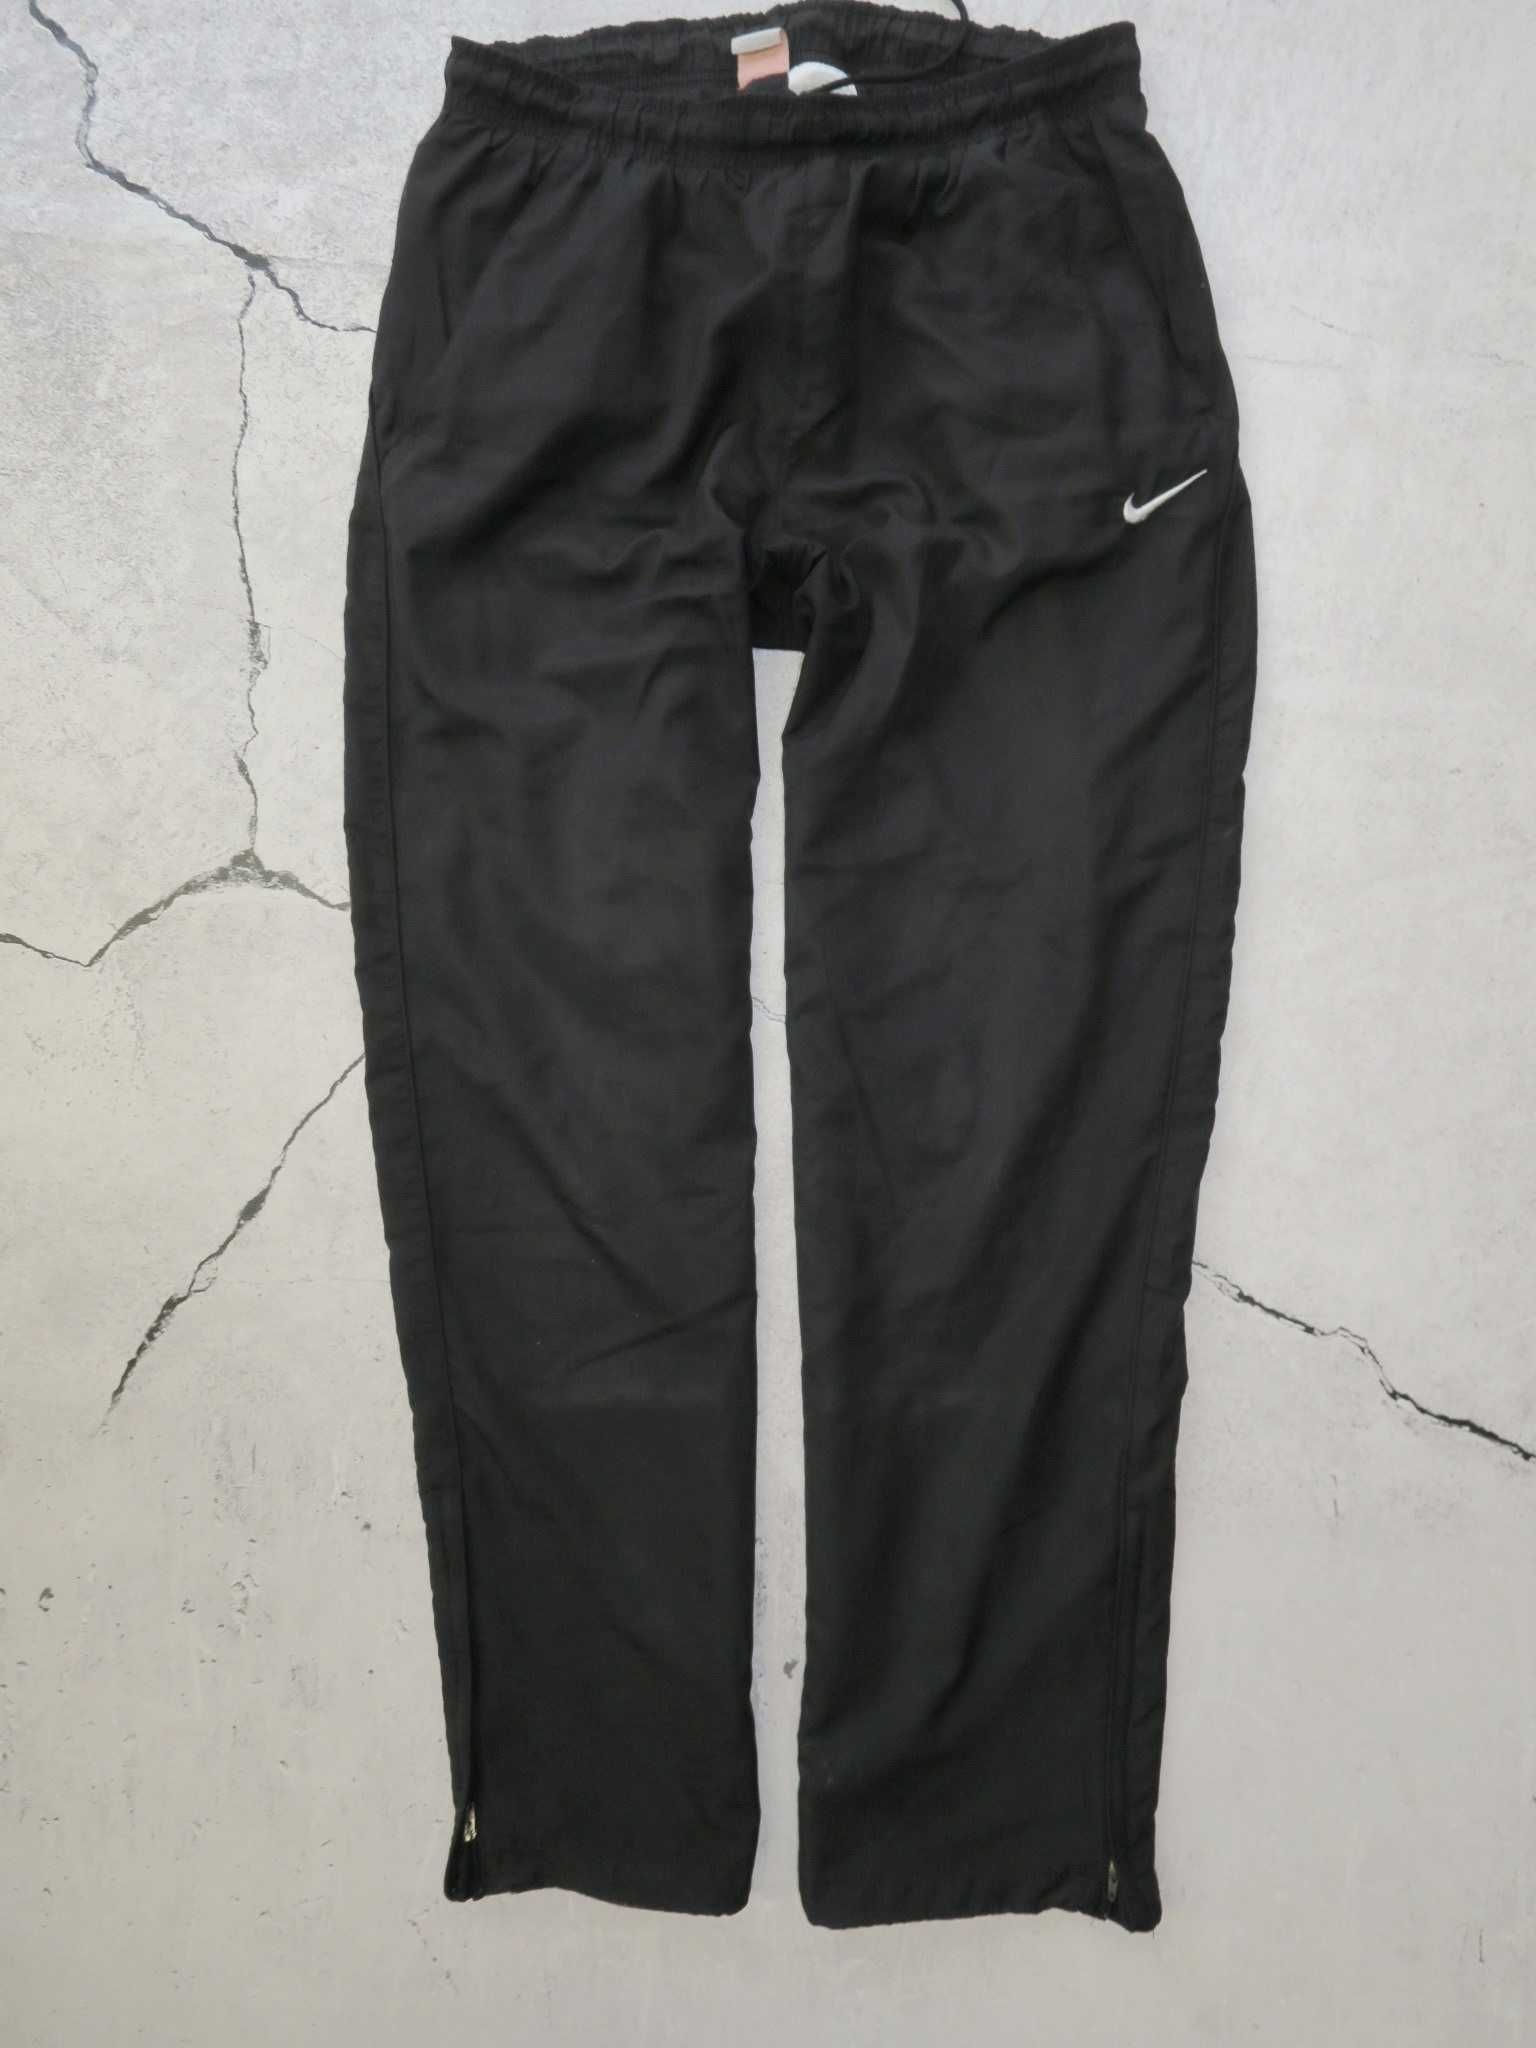 Nike spodnie dresowe przewiewne L